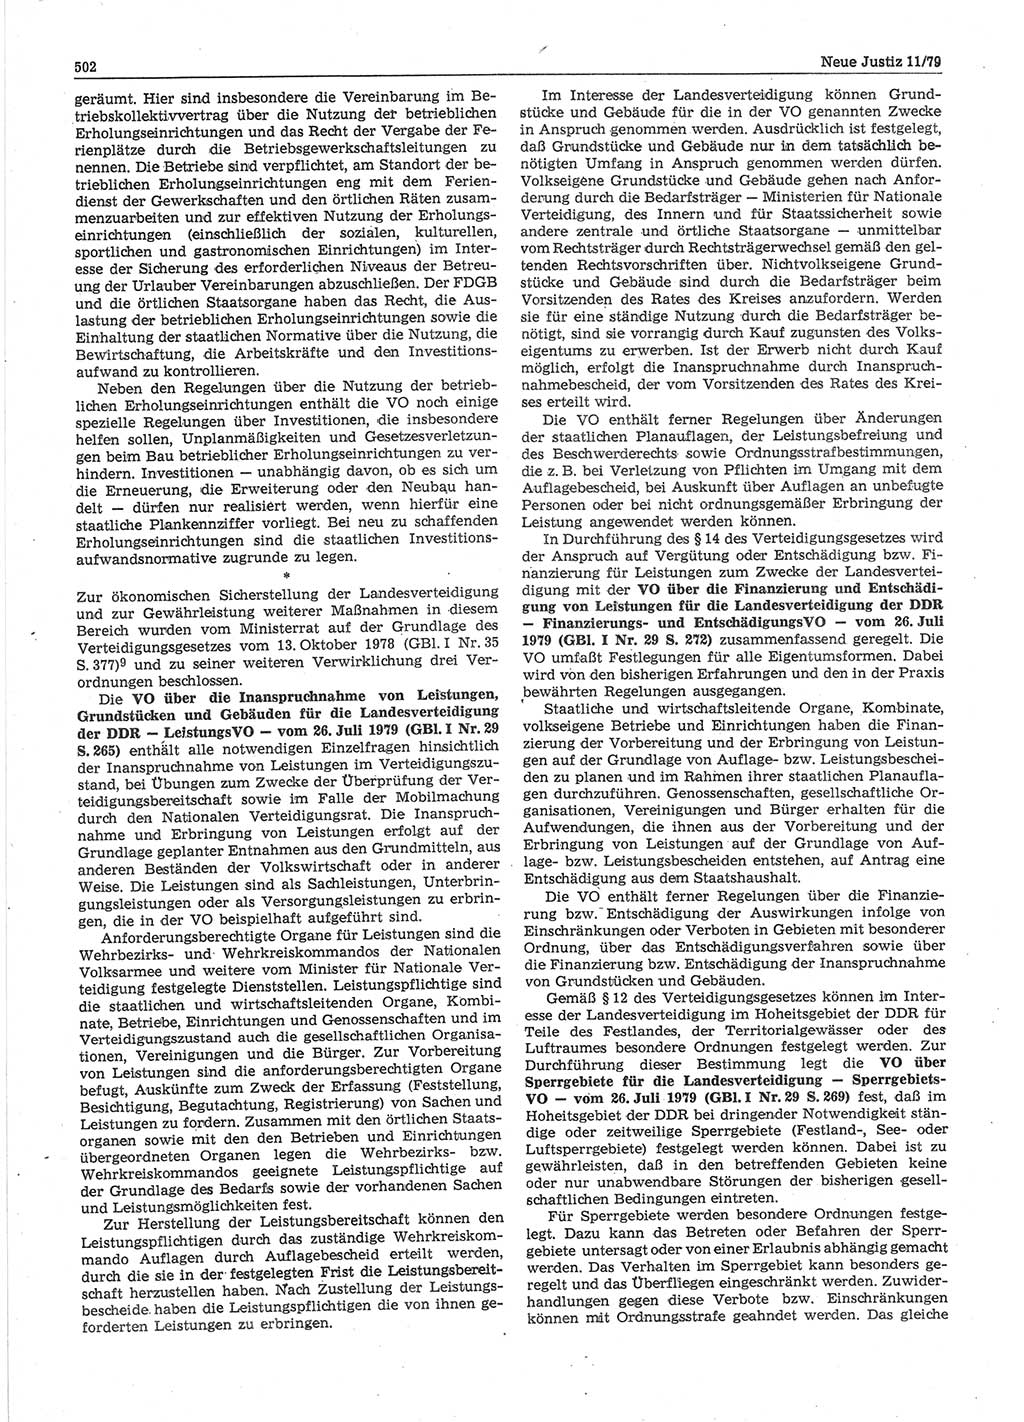 Neue Justiz (NJ), Zeitschrift für sozialistisches Recht und Gesetzlichkeit [Deutsche Demokratische Republik (DDR)], 33. Jahrgang 1979, Seite 502 (NJ DDR 1979, S. 502)